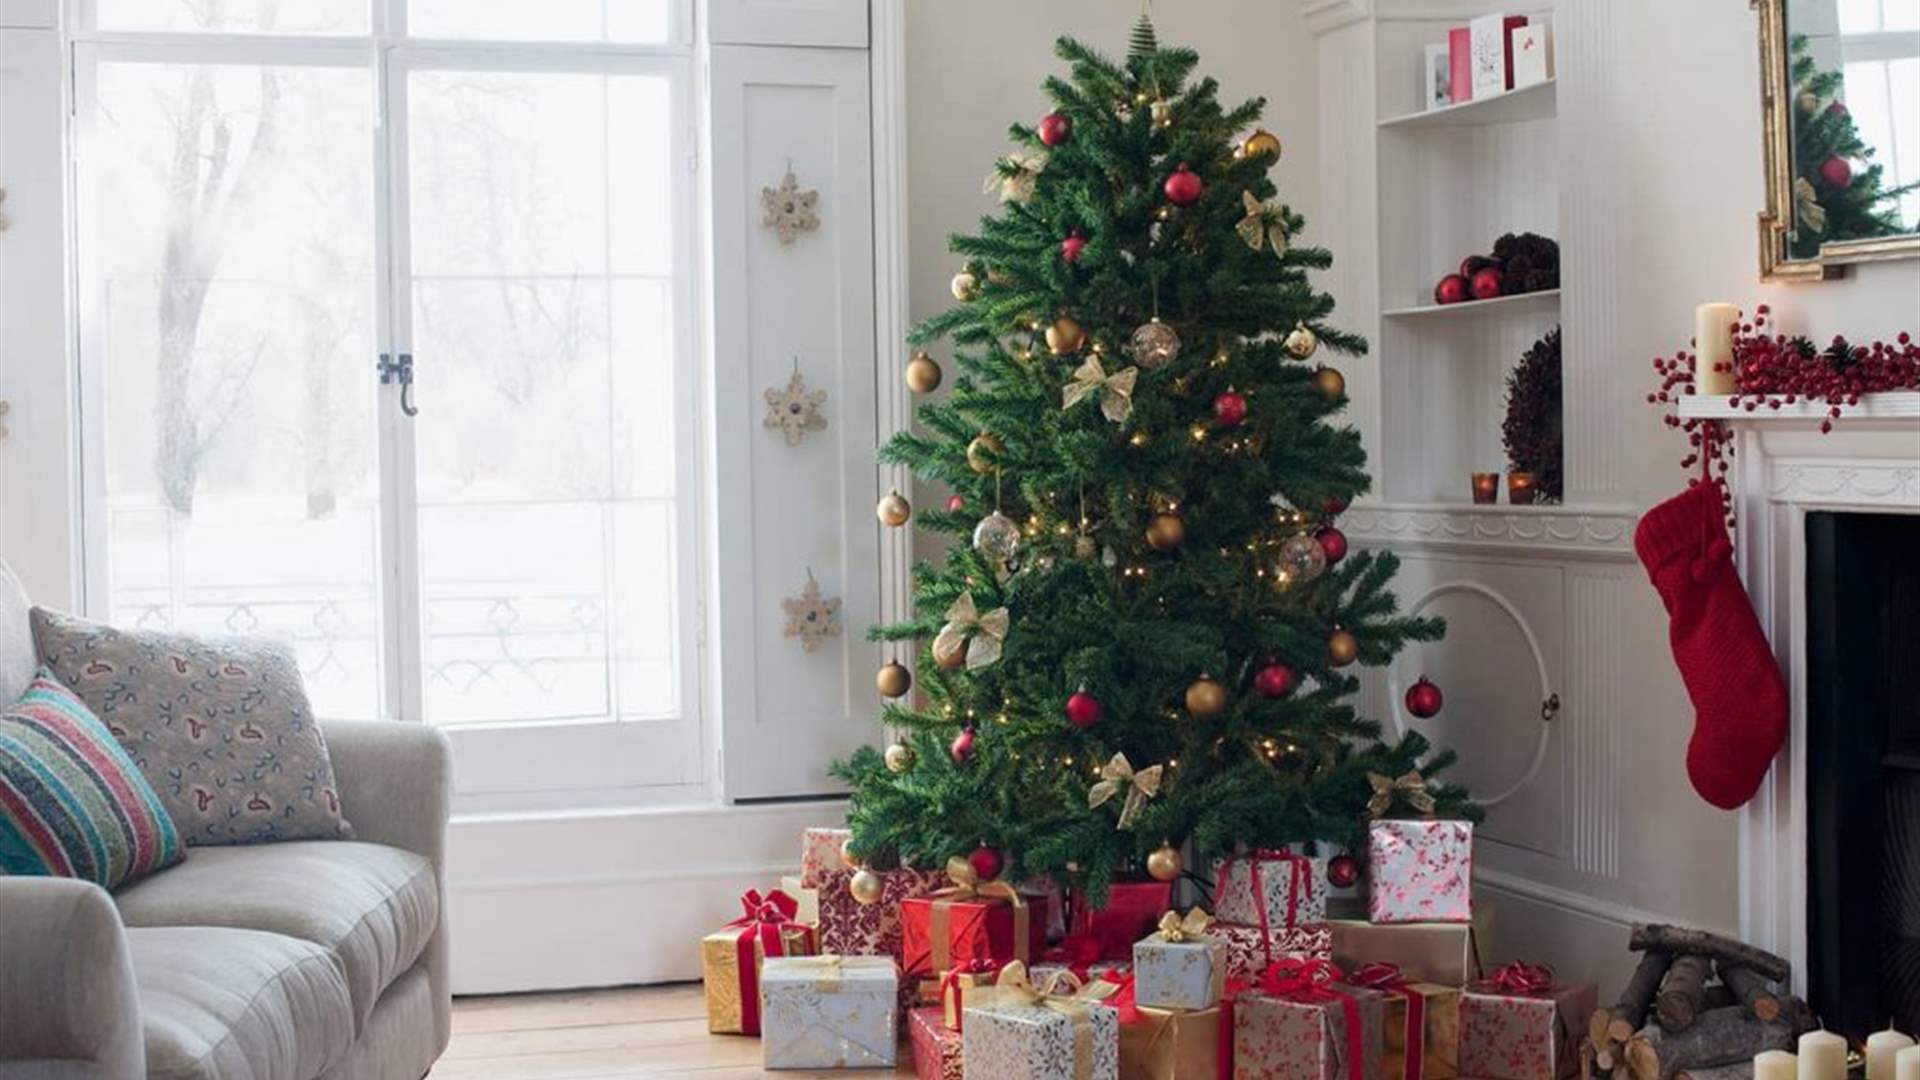 استيقظ الوالدان على صوتٍ غريب... مفاجأة غير متوقعة تحت شجرة الميلاد في المنزل! (صورة)